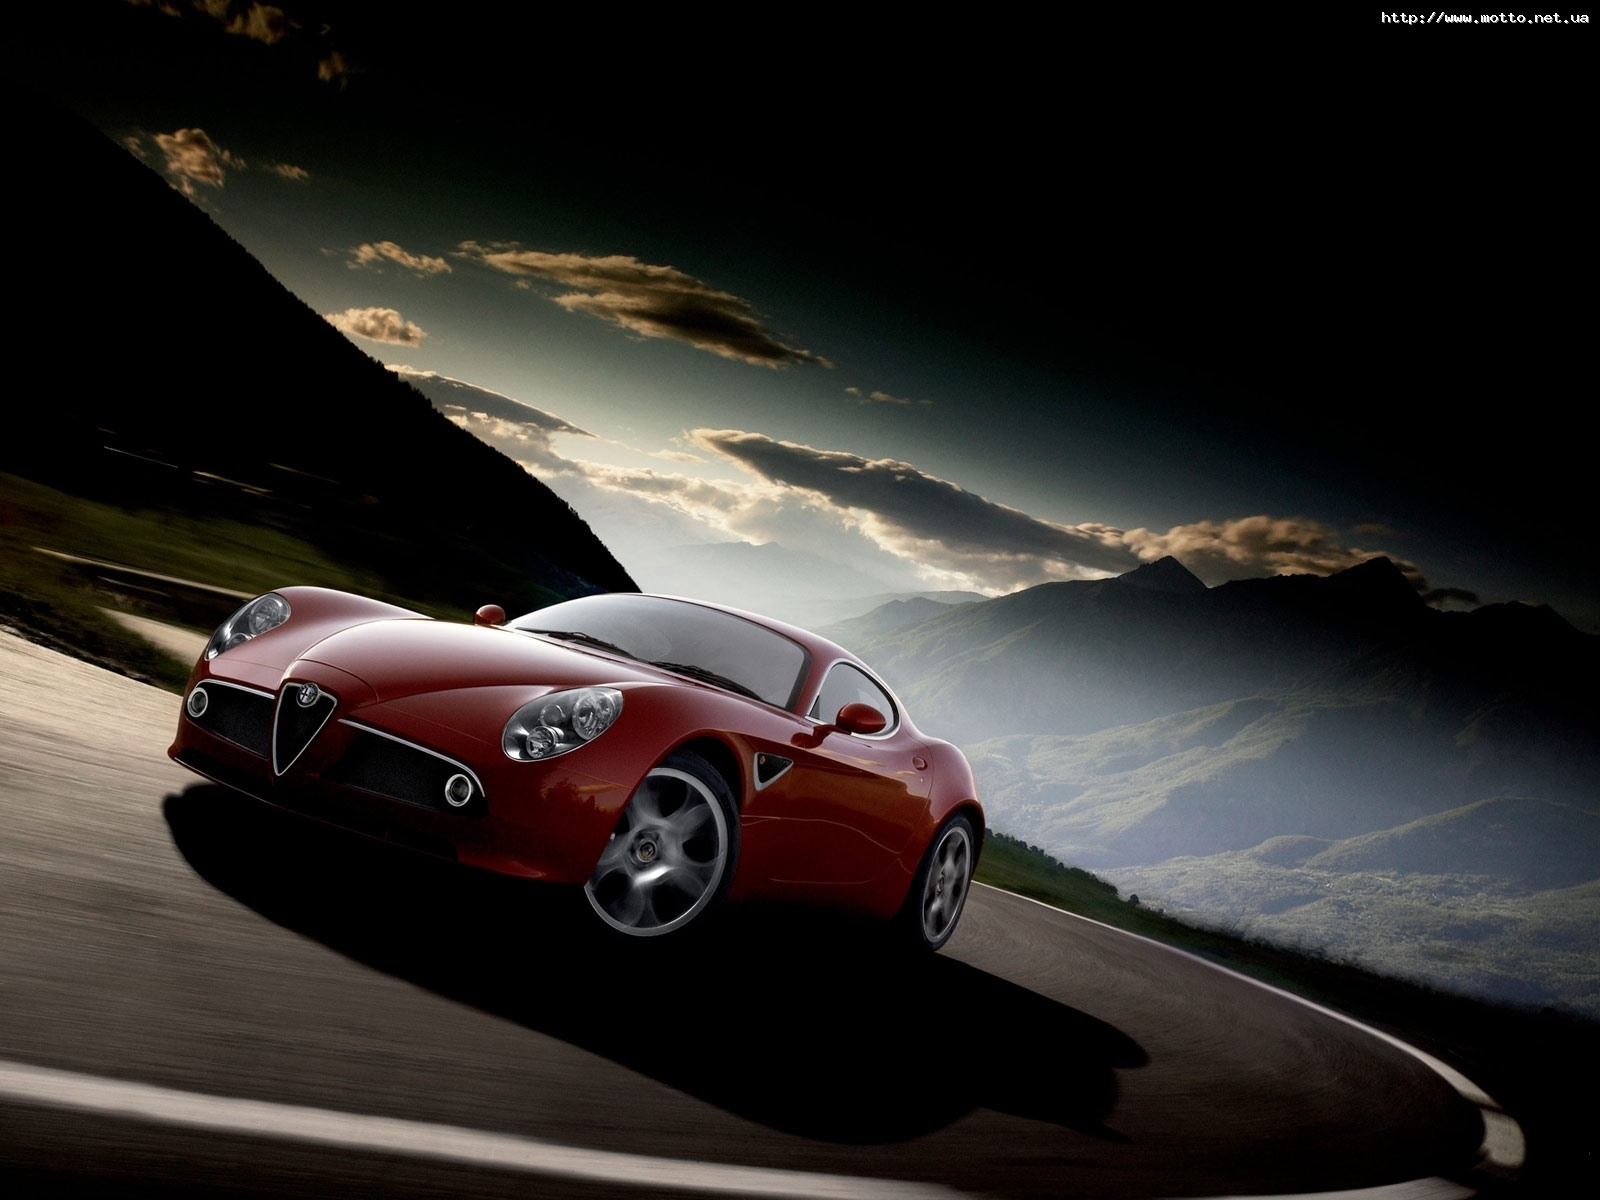 Скачать обои бесплатно Альфа Ромео (Alfa Romeo), Транспорт, Дороги, Машины картинка на рабочий стол ПК